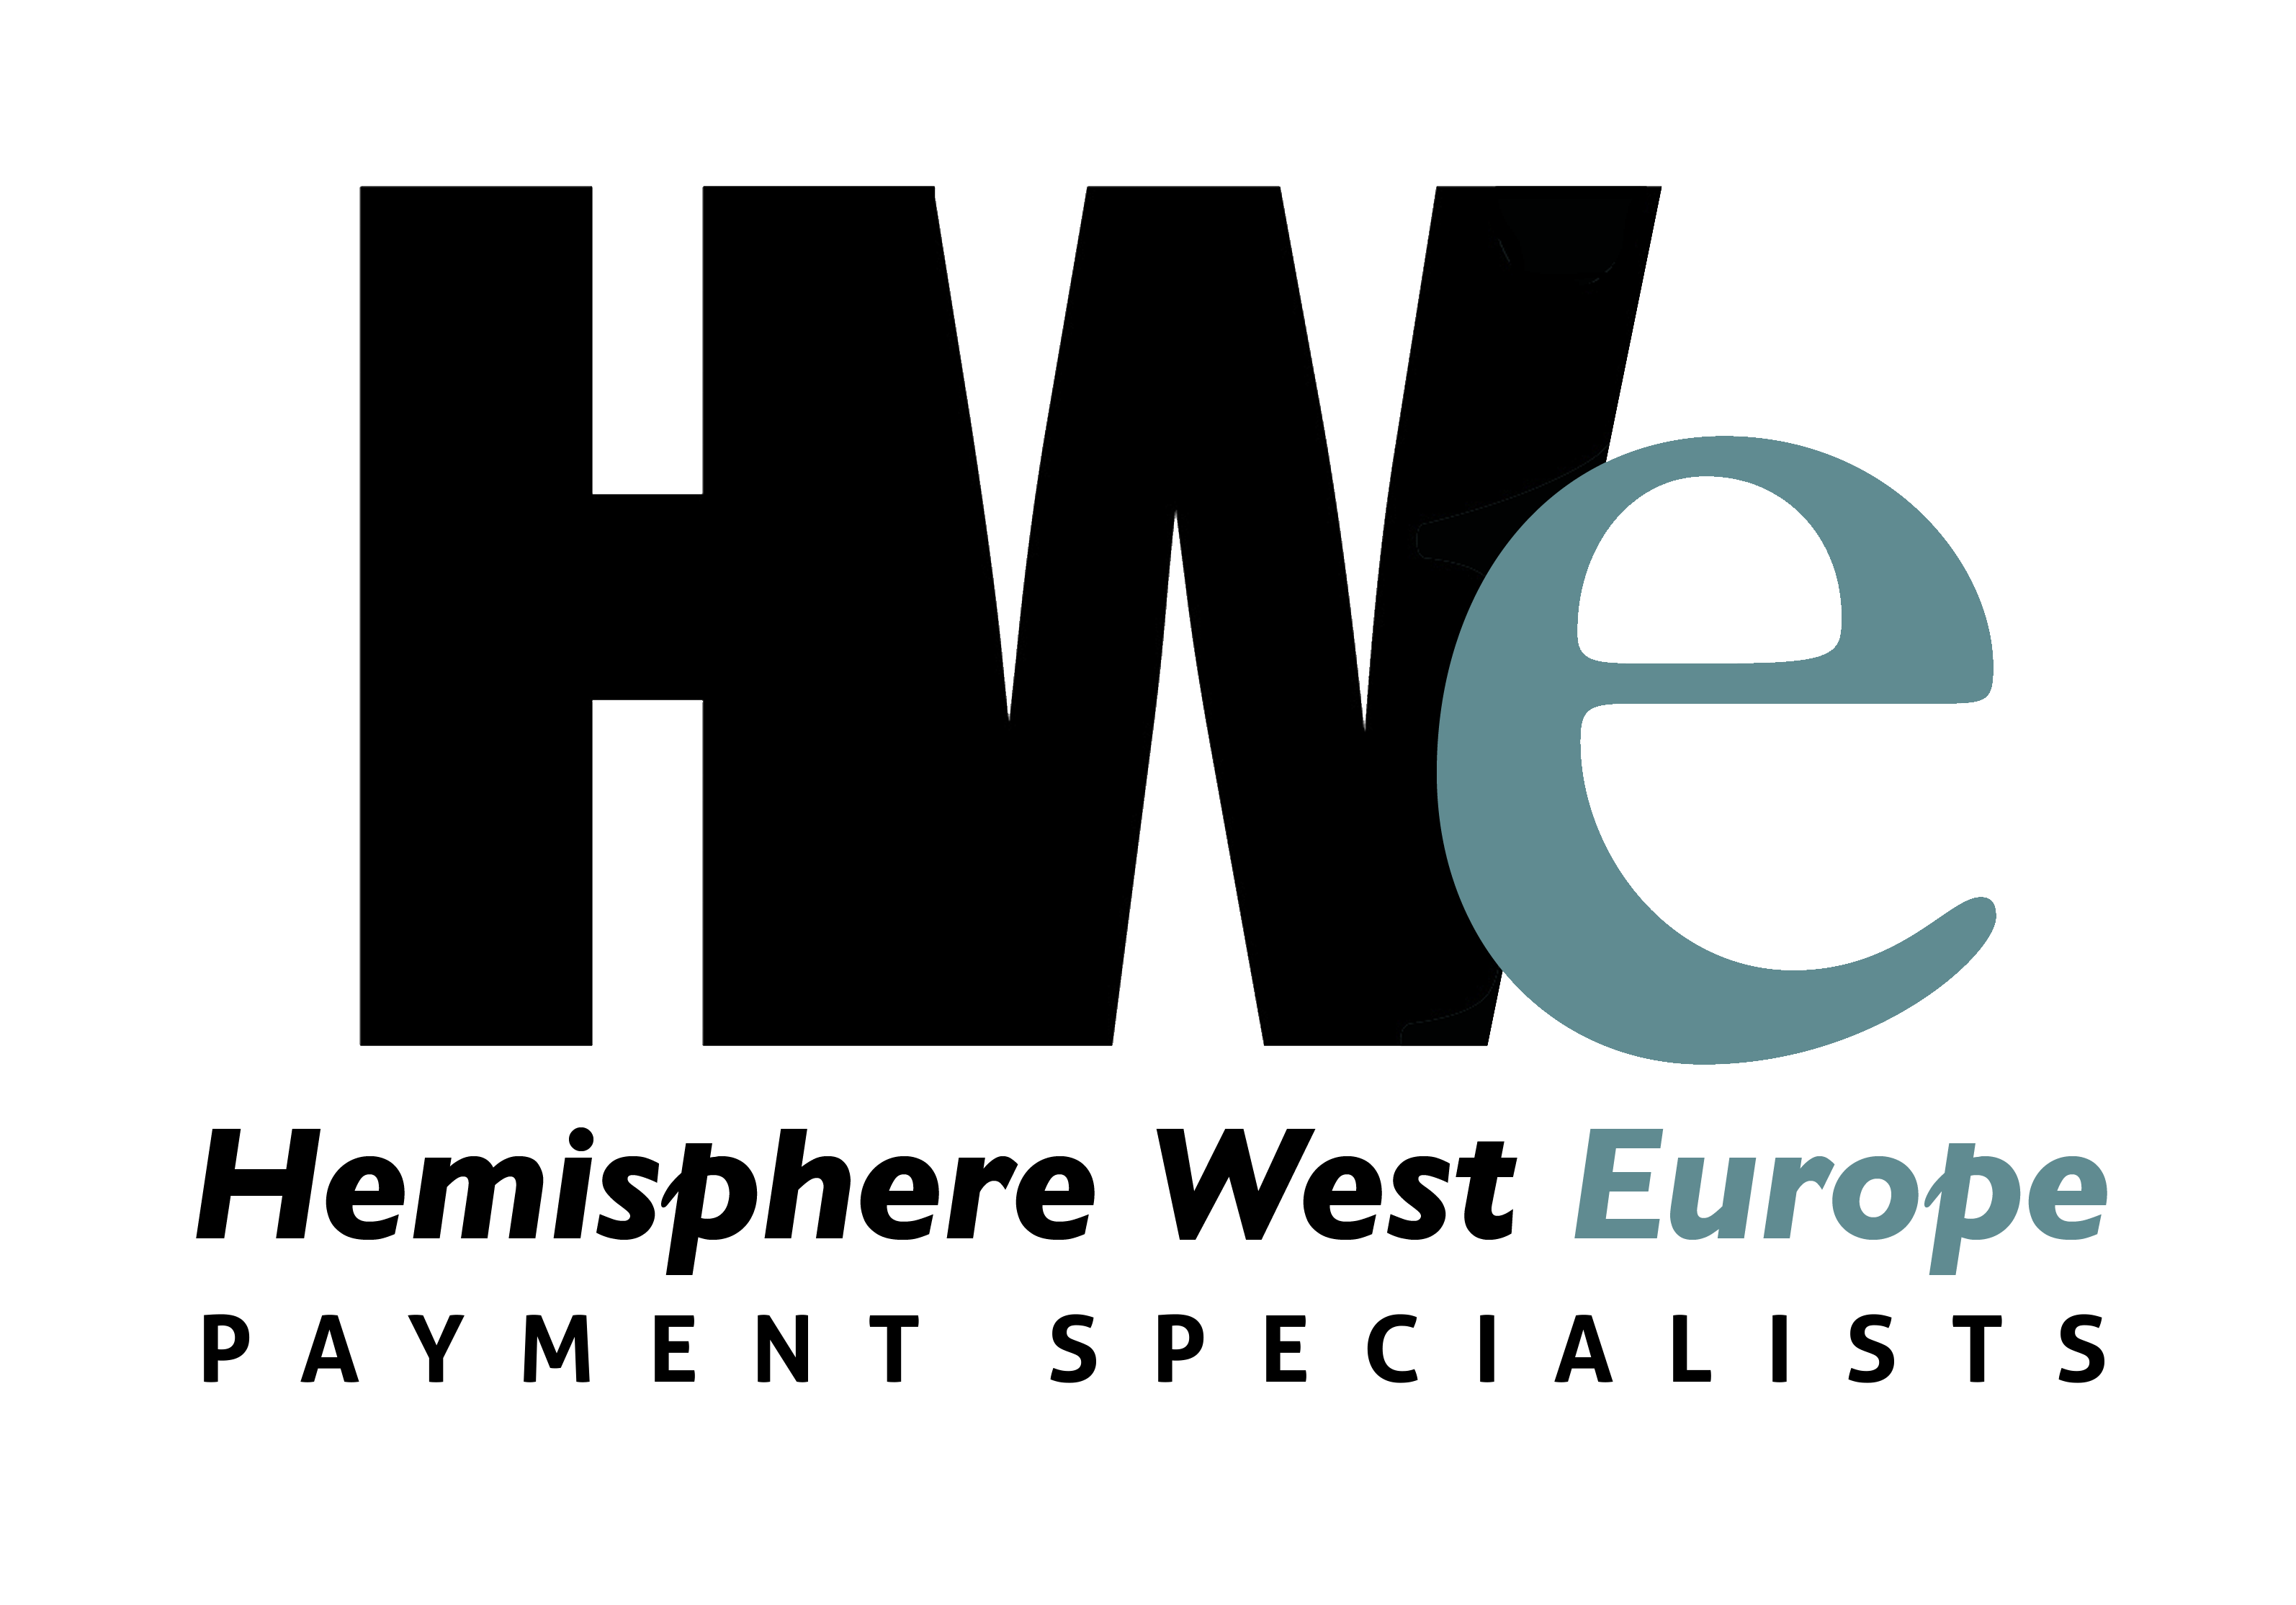 Hemisphere West Europe Ltd